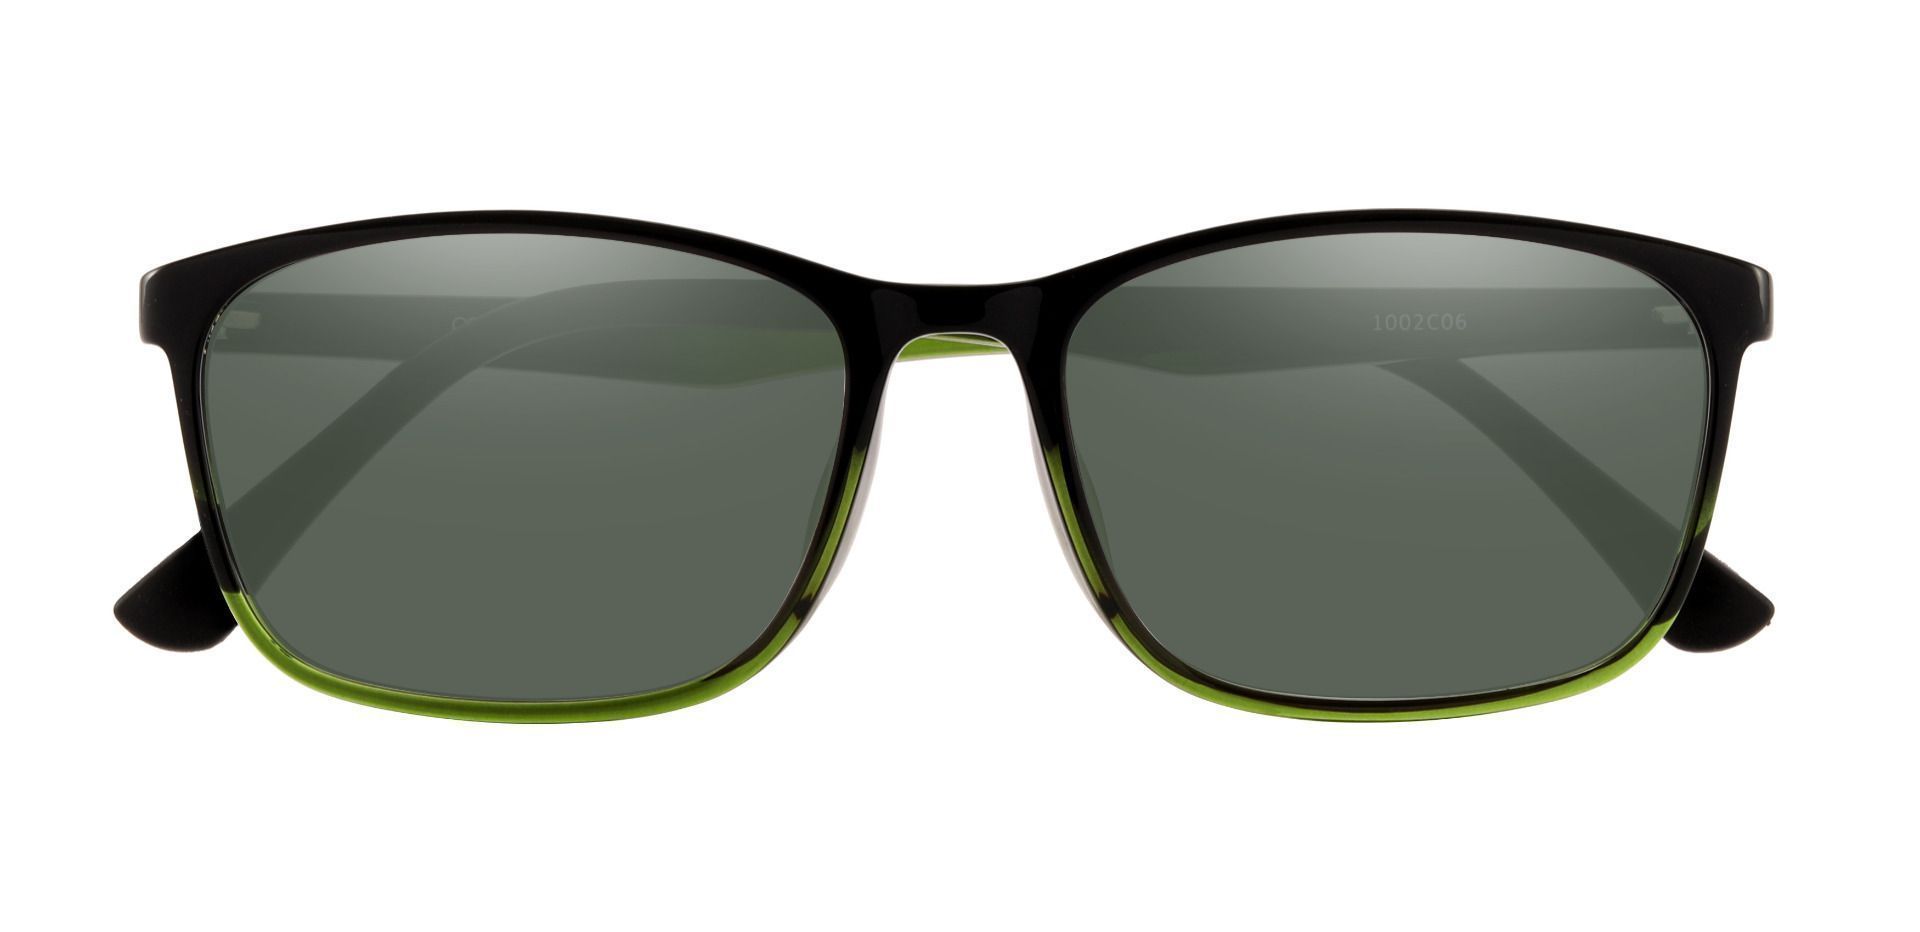 Ingram Rectangle Prescription Sunglasses - Green Frame With Green Lenses